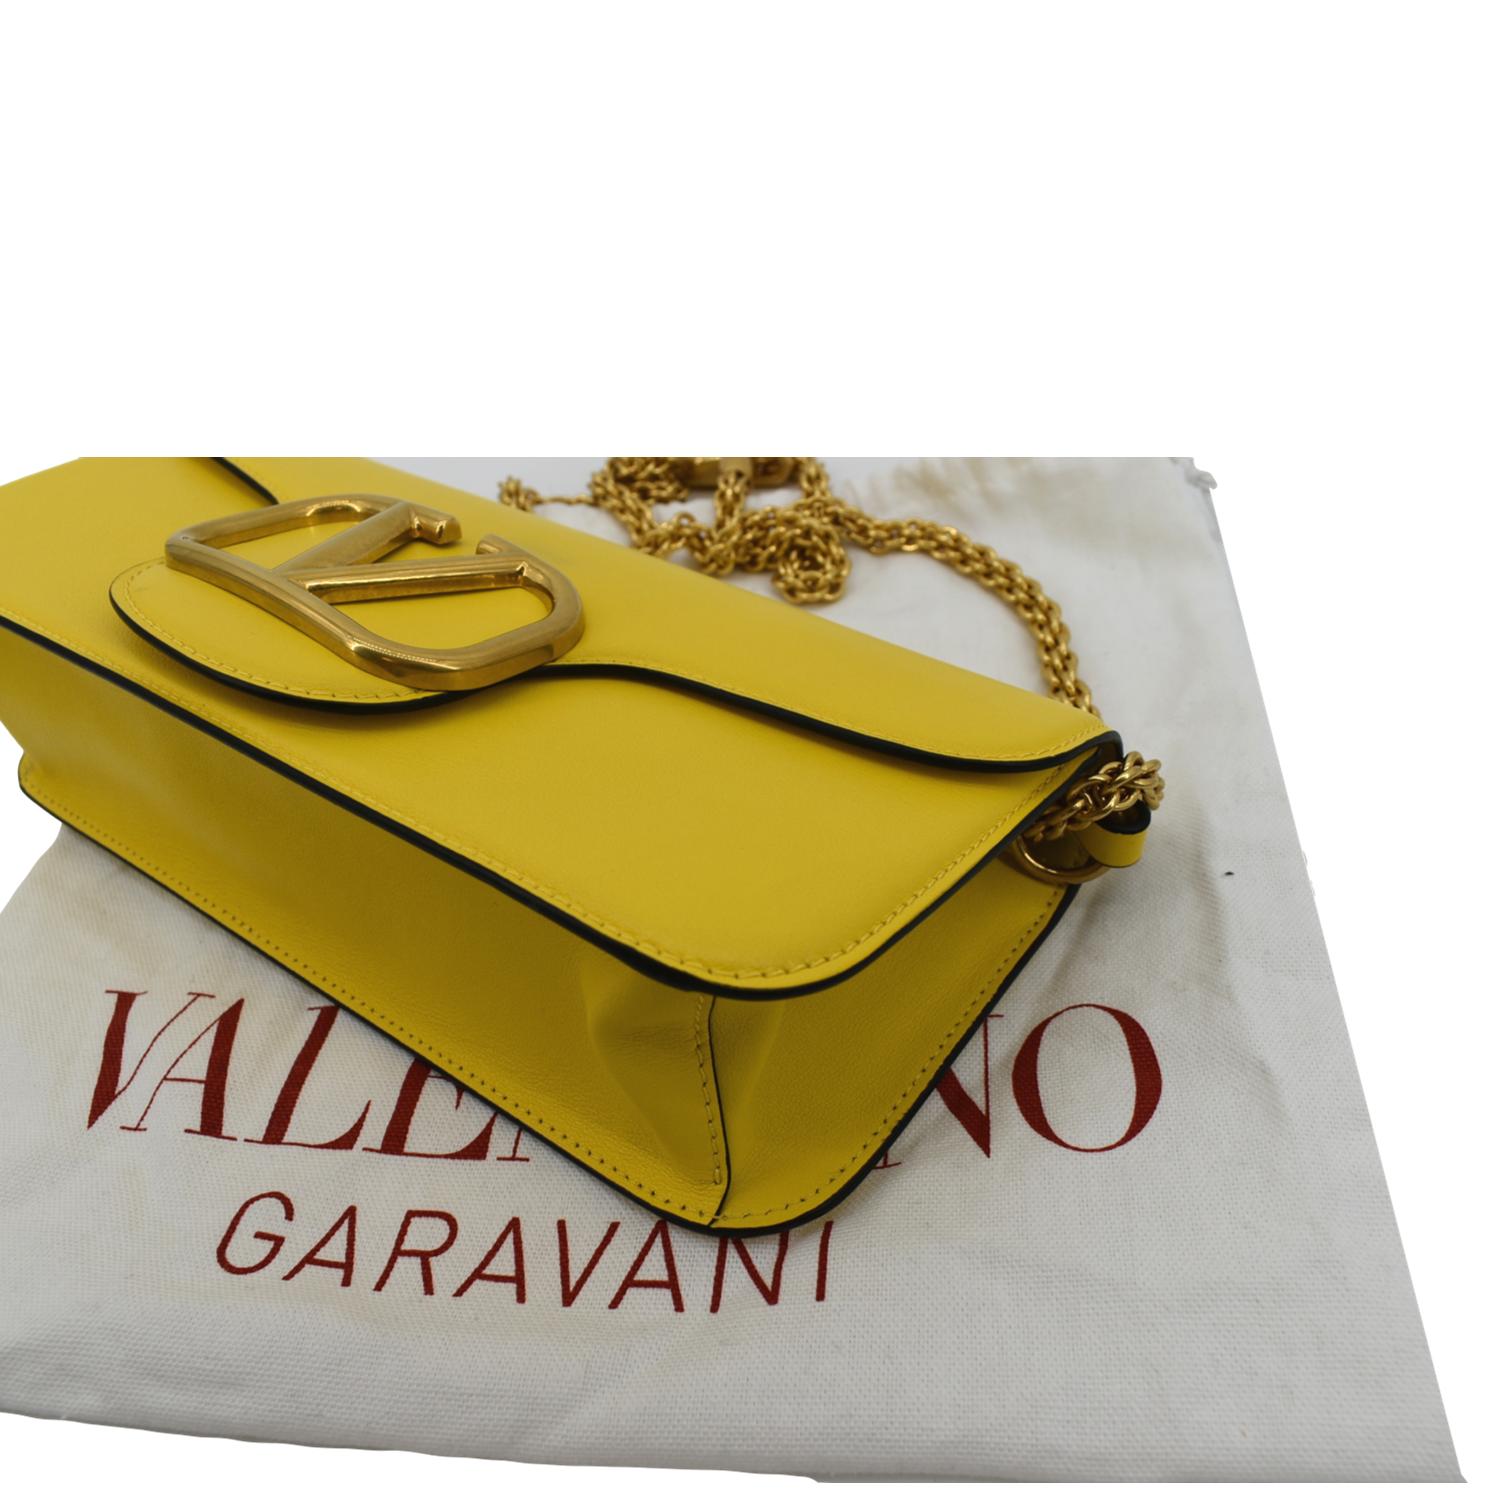 Valentino Garavani - Loco Green Leather Small Shoulder Bag